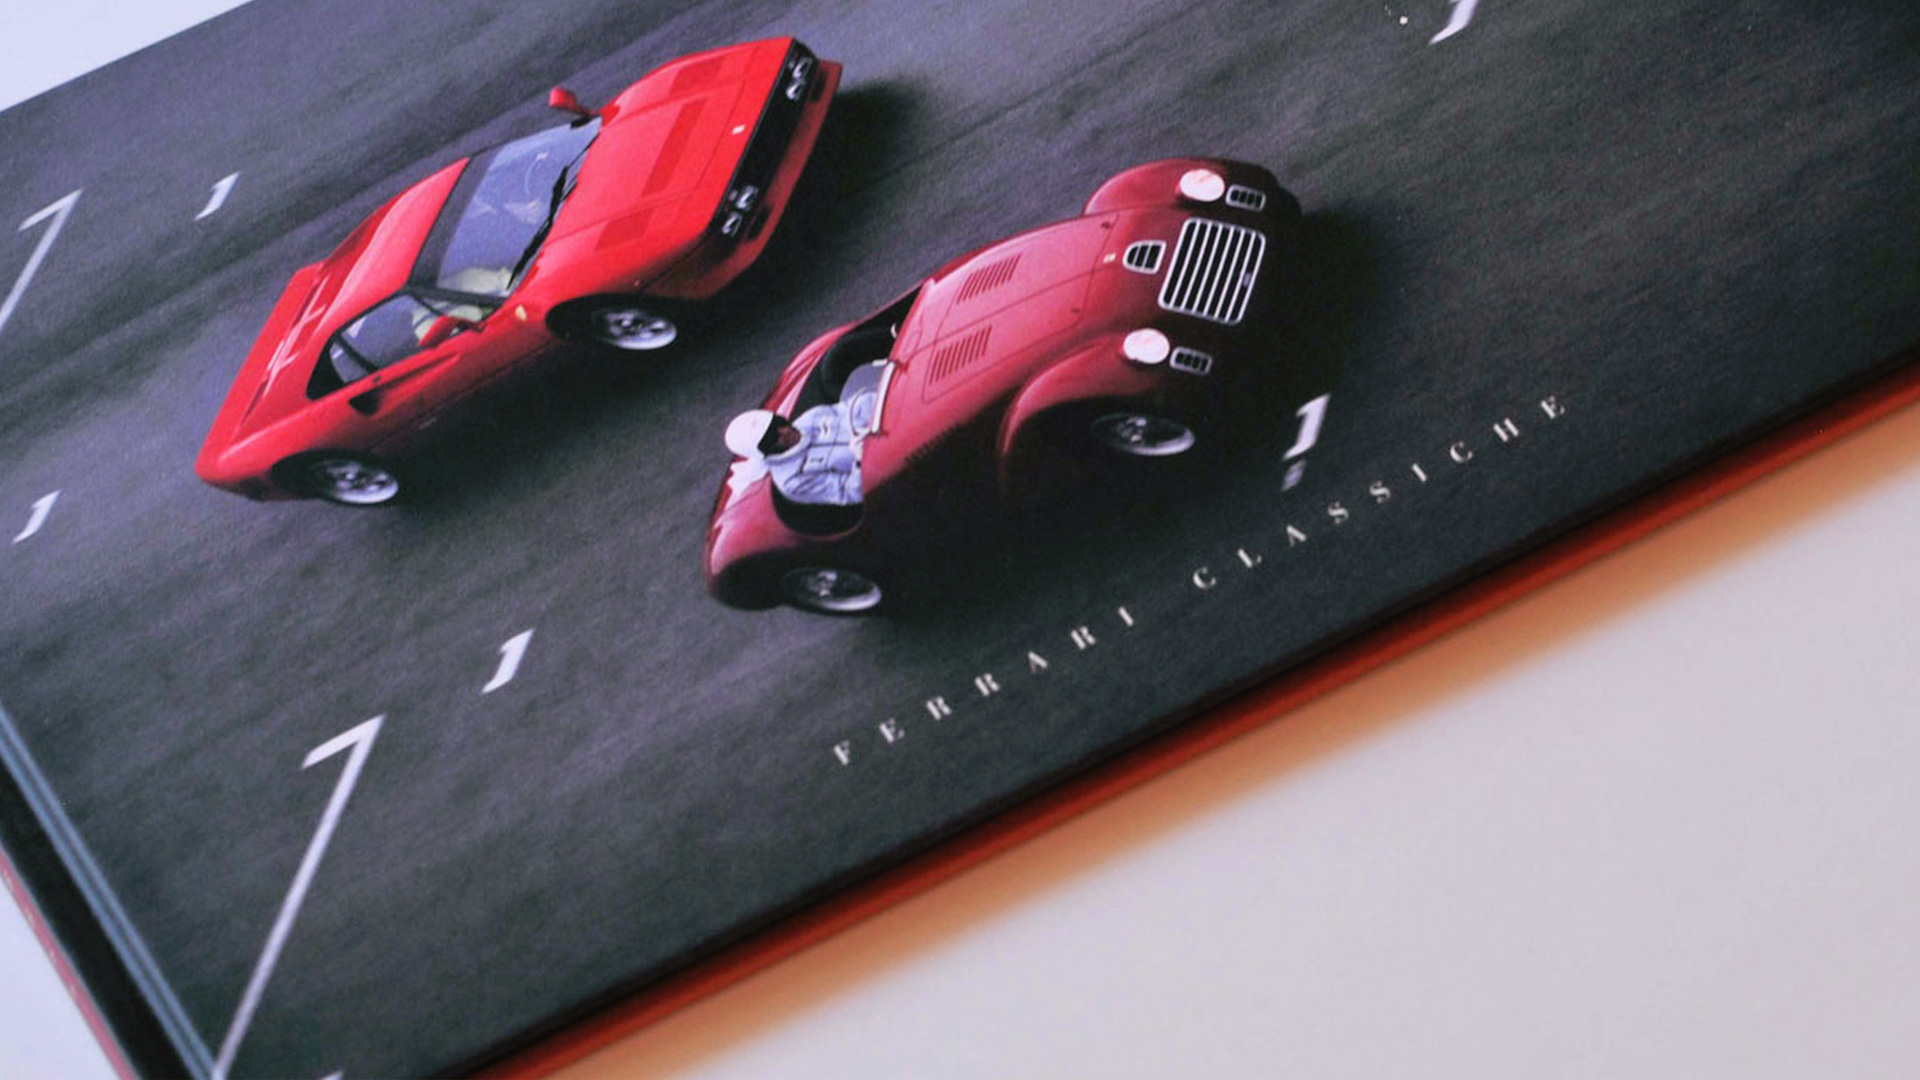 Ferrari Classiche monograph, the Art of Restoration